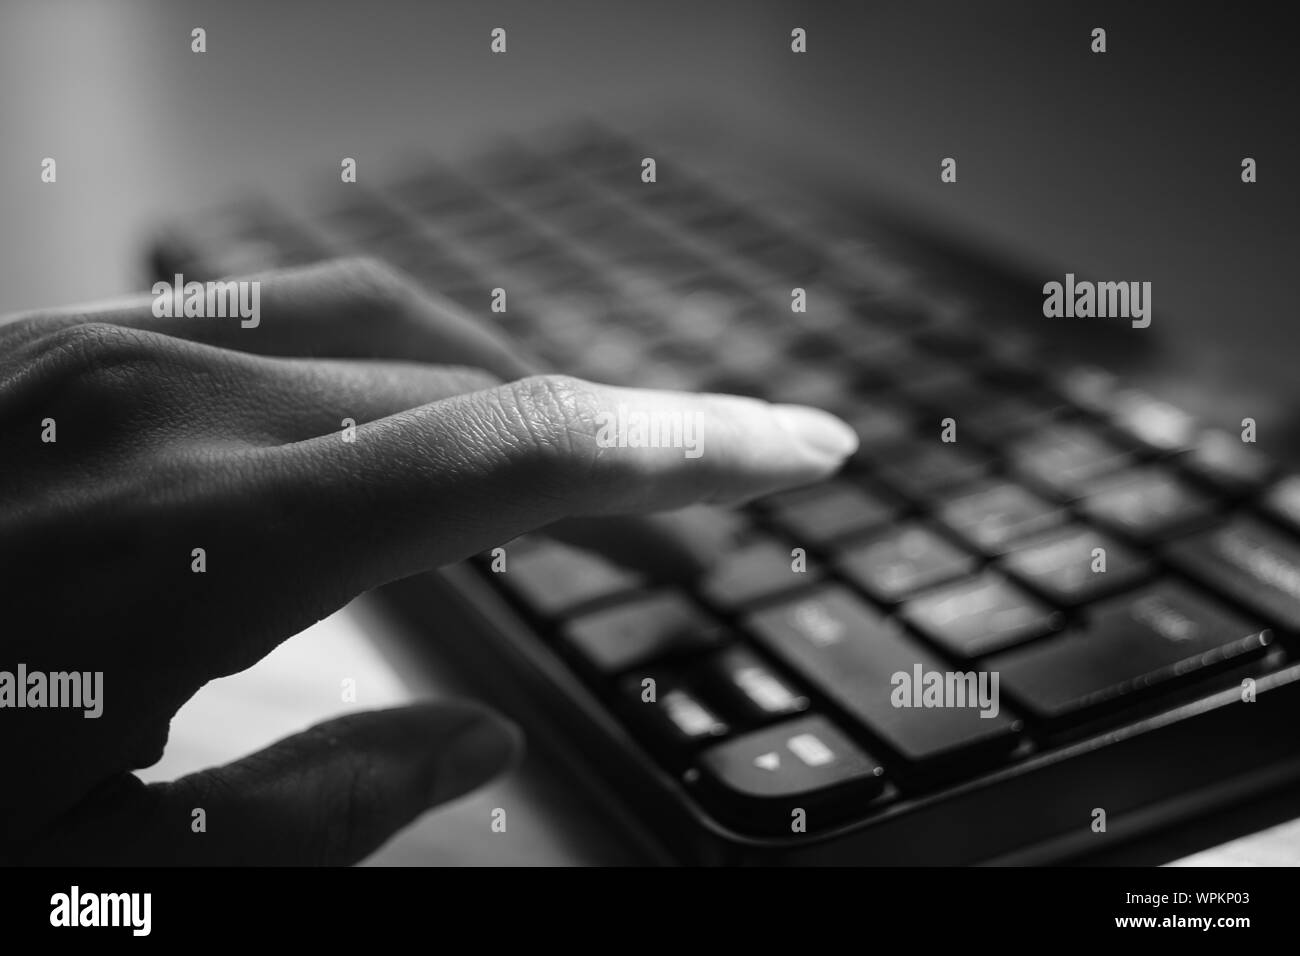 La femelle est saisie au clavier, selective focus sur le doigt, photo en noir et blanc. Banque D'Images